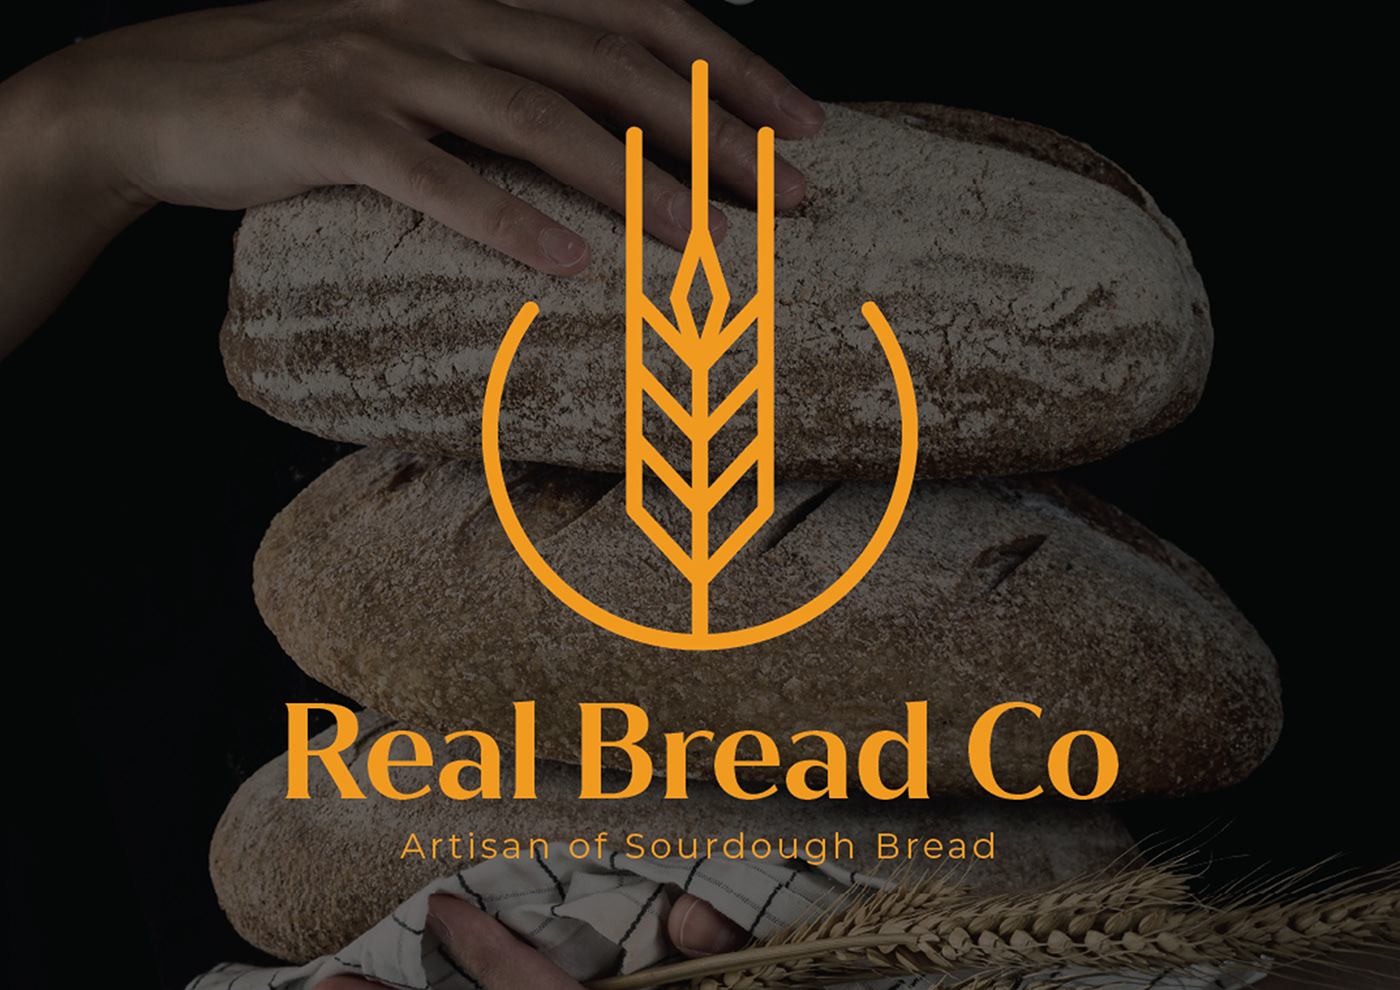 bakery brand identity branding  bread logo Packaging packaging design sourdough